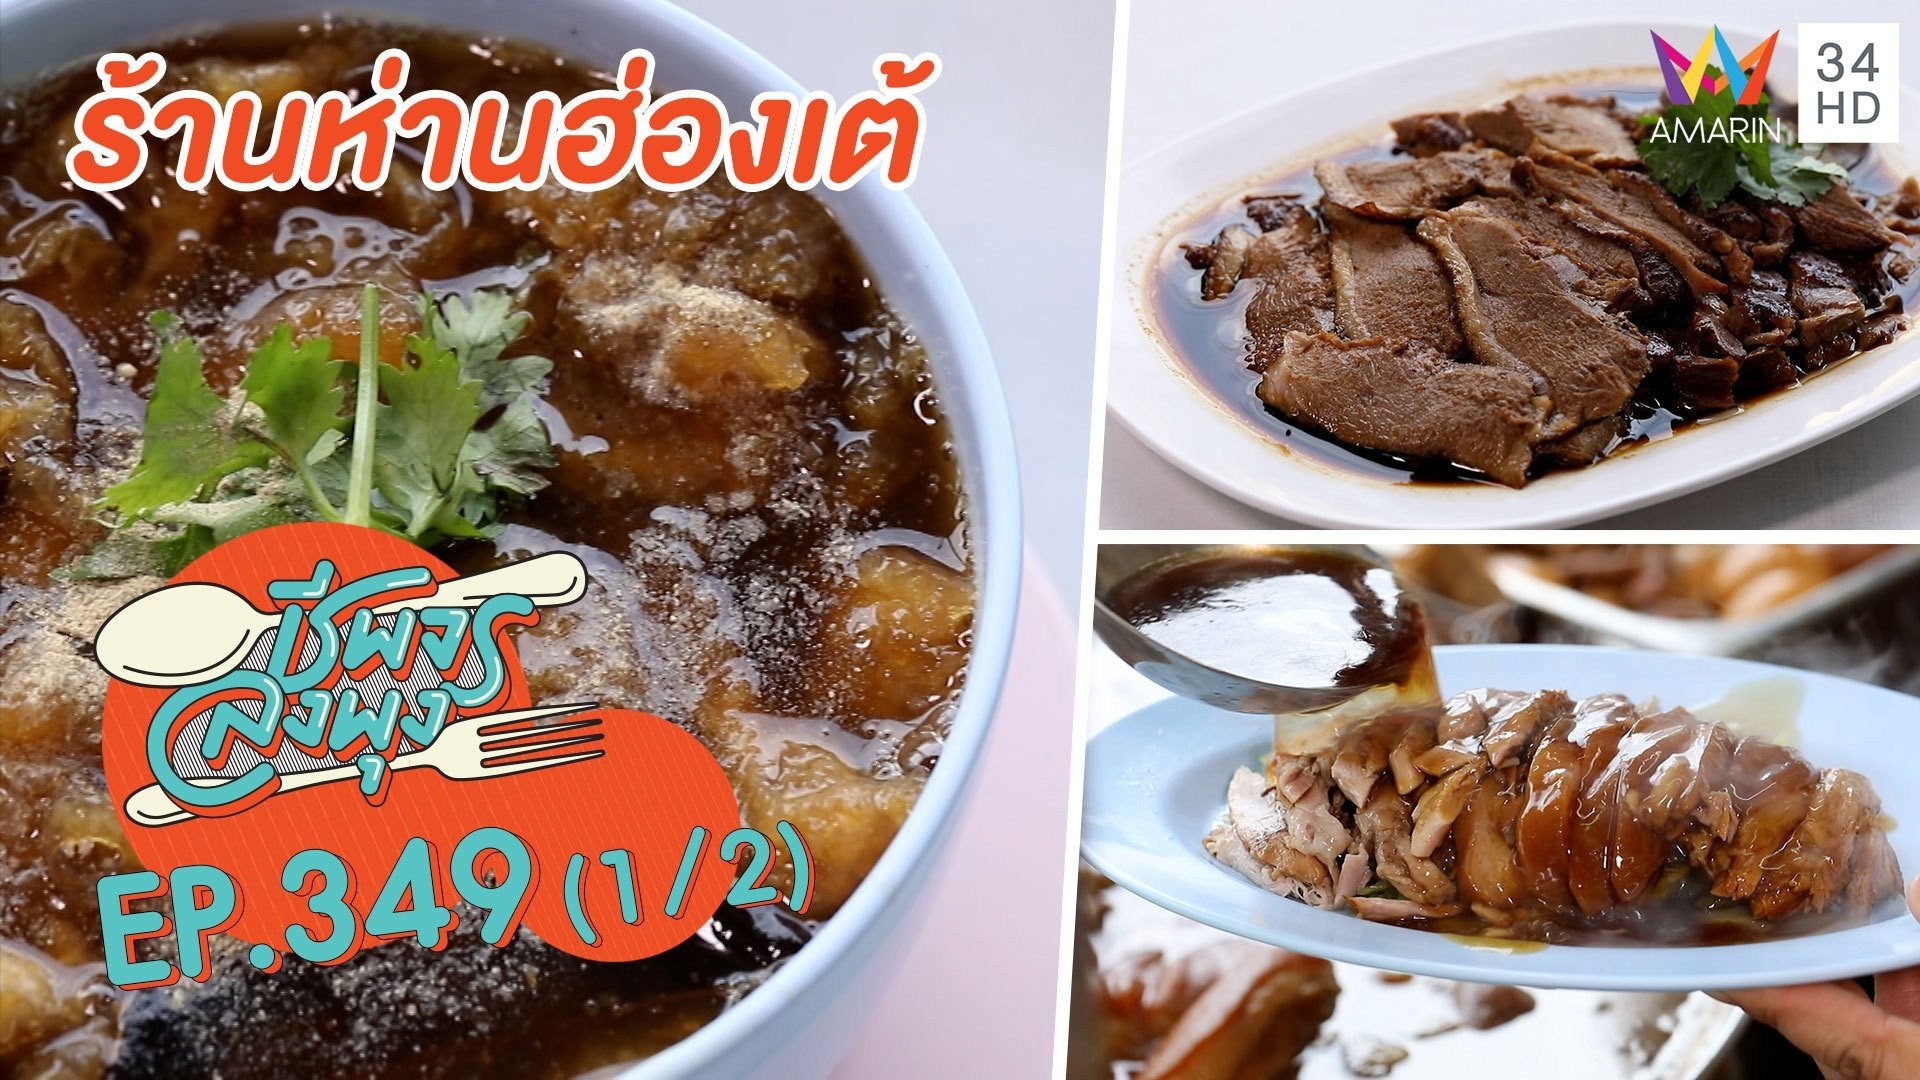 อร่อยทุกจานใส่ใจทุกเมนู @ร้านห่านฮ่องเต้ | ชีพจรลงพุง | 11 ธ.ค. 64 (1/2) | AMARIN TVHD34